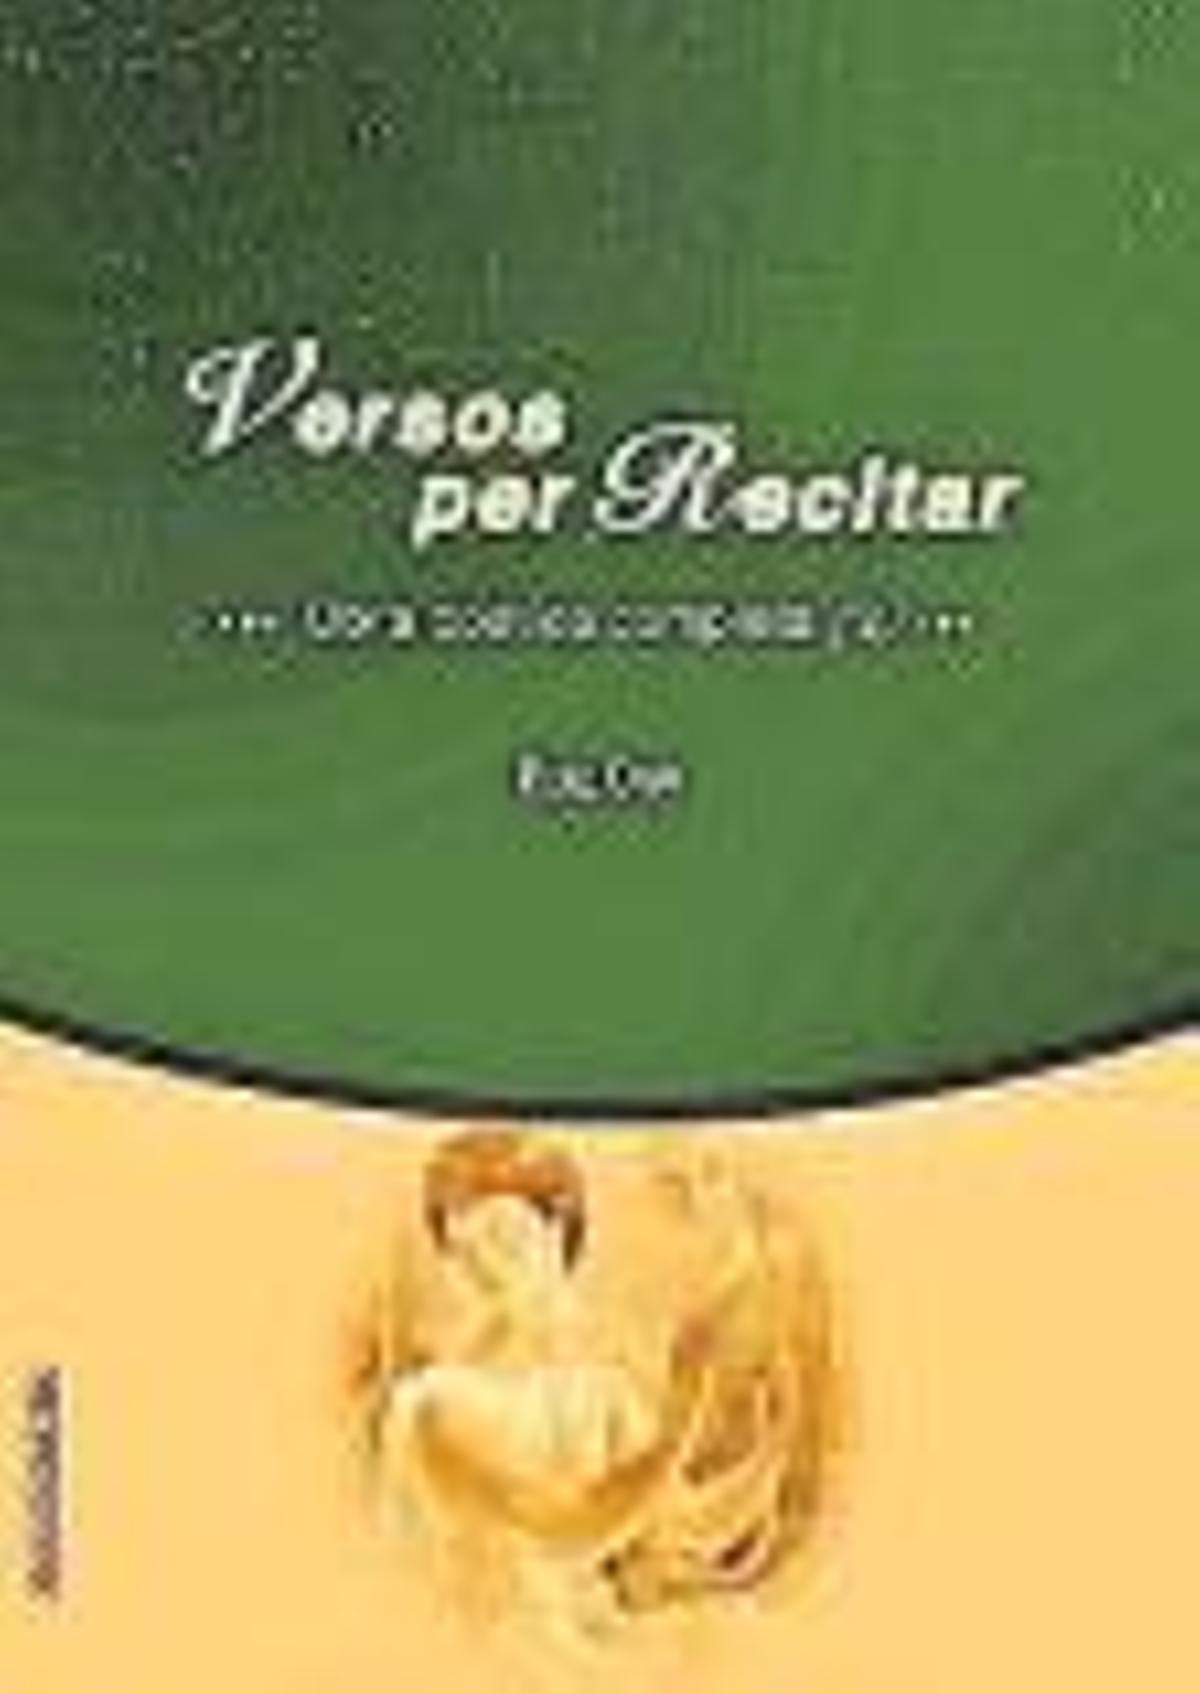 Pere Orpí. Versos per recitarObra pòetica completa (2). Pròleg de Damià Pons Pons. Estudi preliminar: Pere Rosselló Bover. Documenta, 734 Pàgines, 32 €.